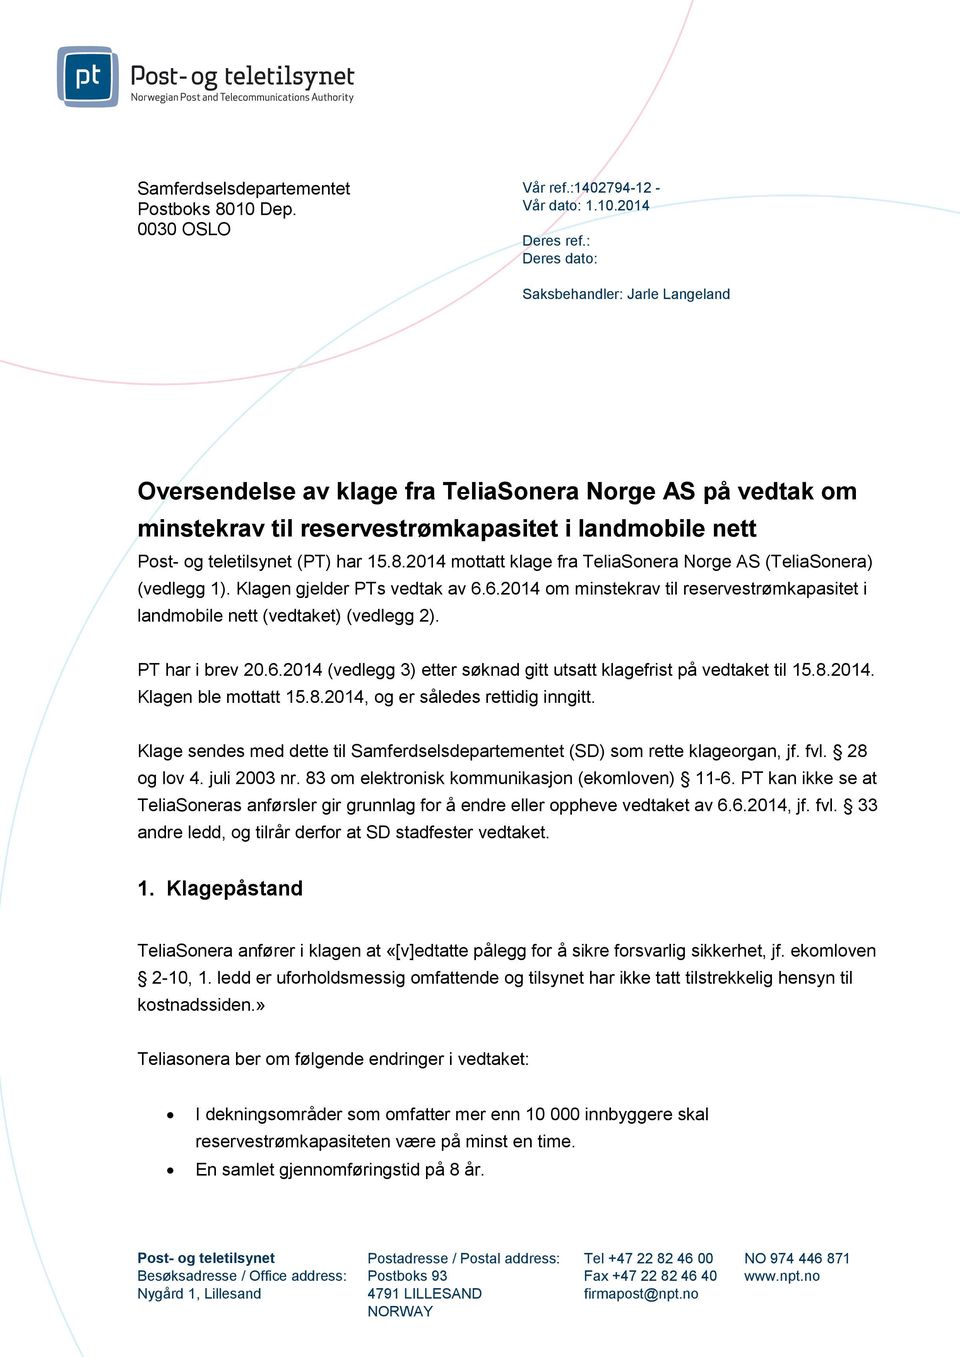 2014 mottatt klage fra TeliaSonera Norge AS (TeliaSonera) (vedlegg 1). Klagen gjelder PTs vedtak av 6.6.2014 om minstekrav til reservestrømkapasitet i landmobile nett (vedtaket) (vedlegg 2).